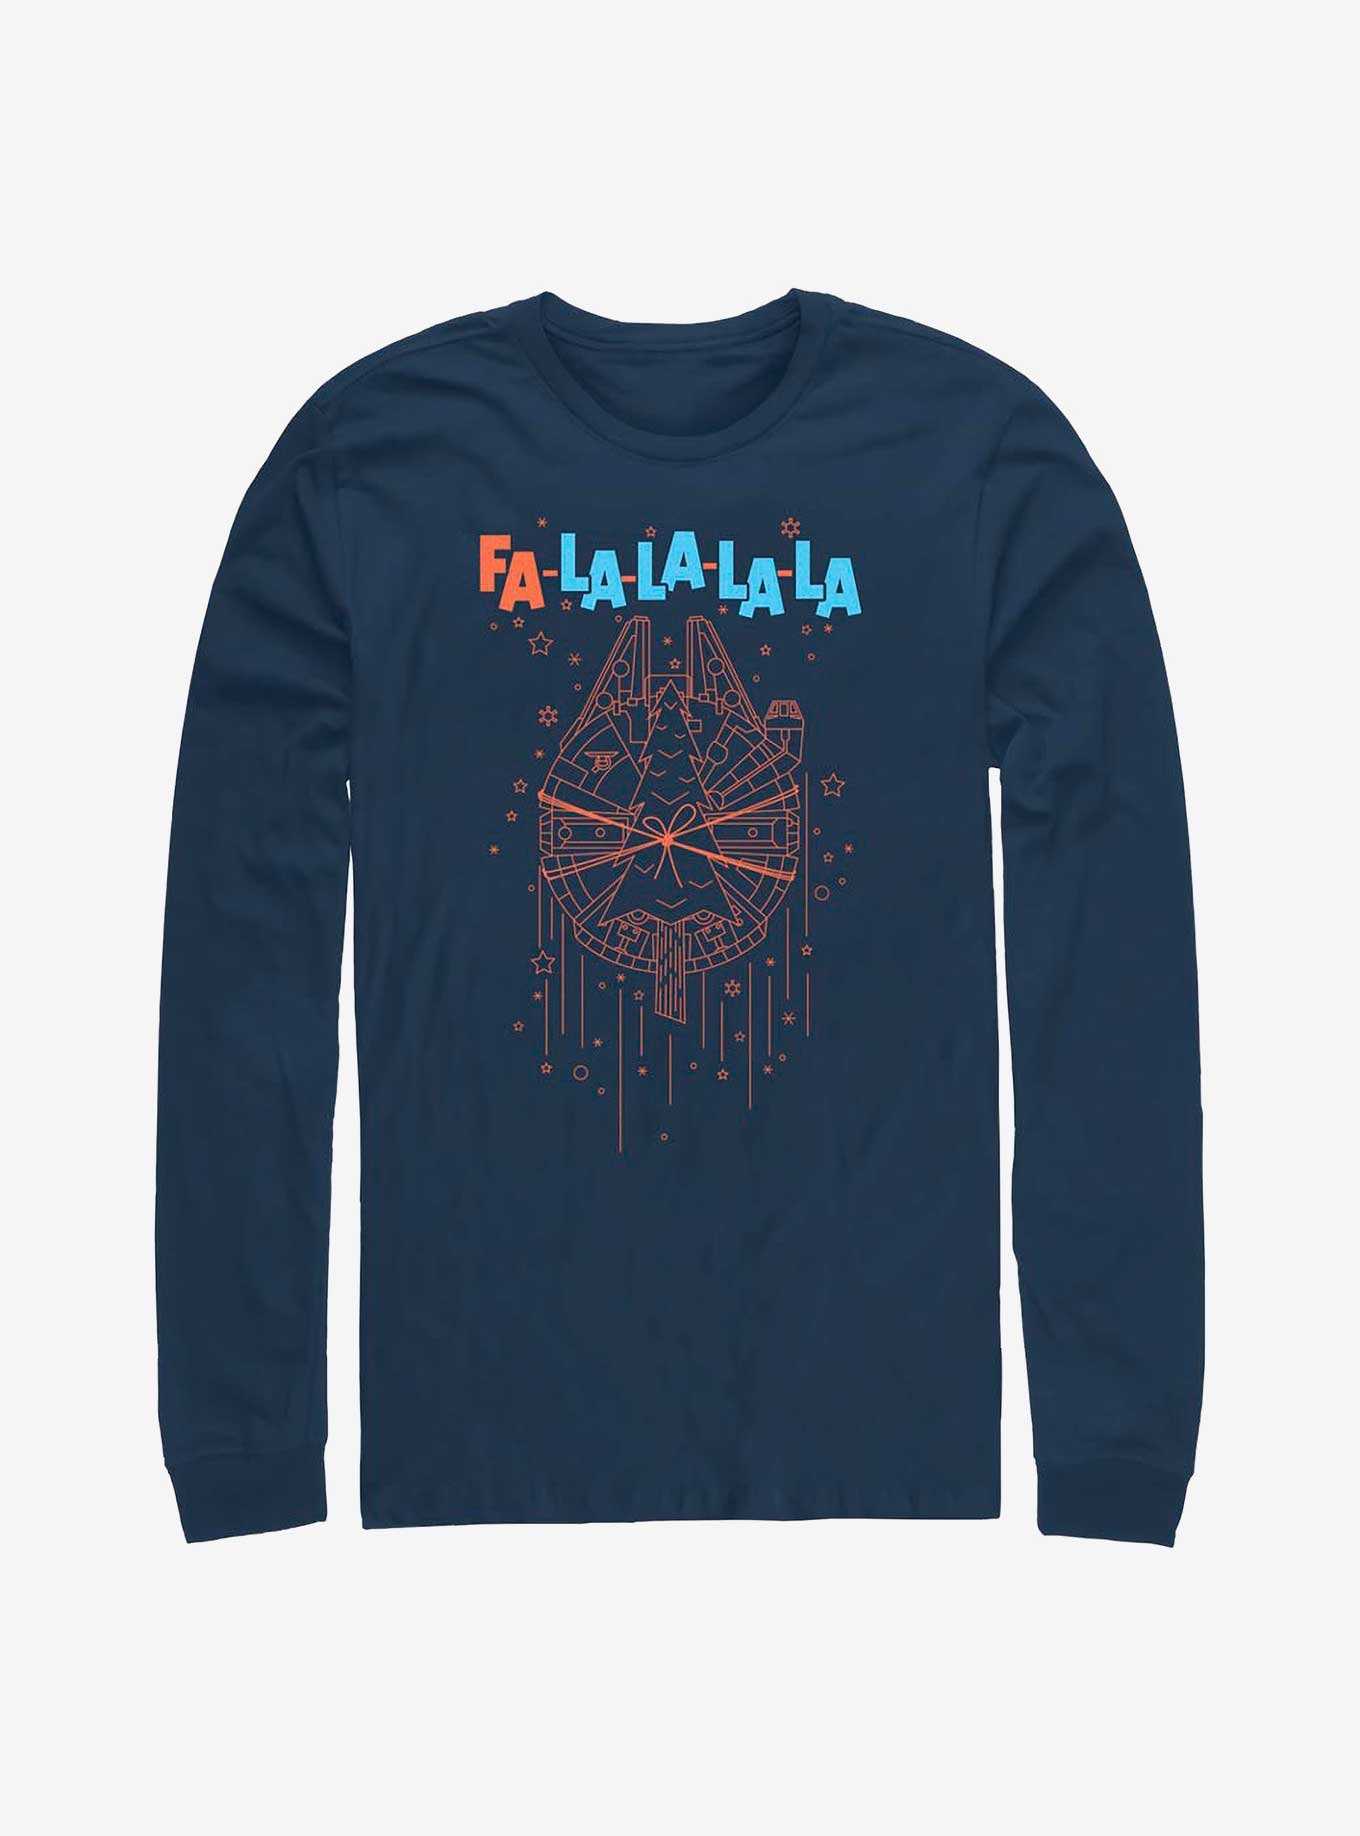 Star Wars Fa La La Falcon Long-Sleeve T-Shirt, , hi-res